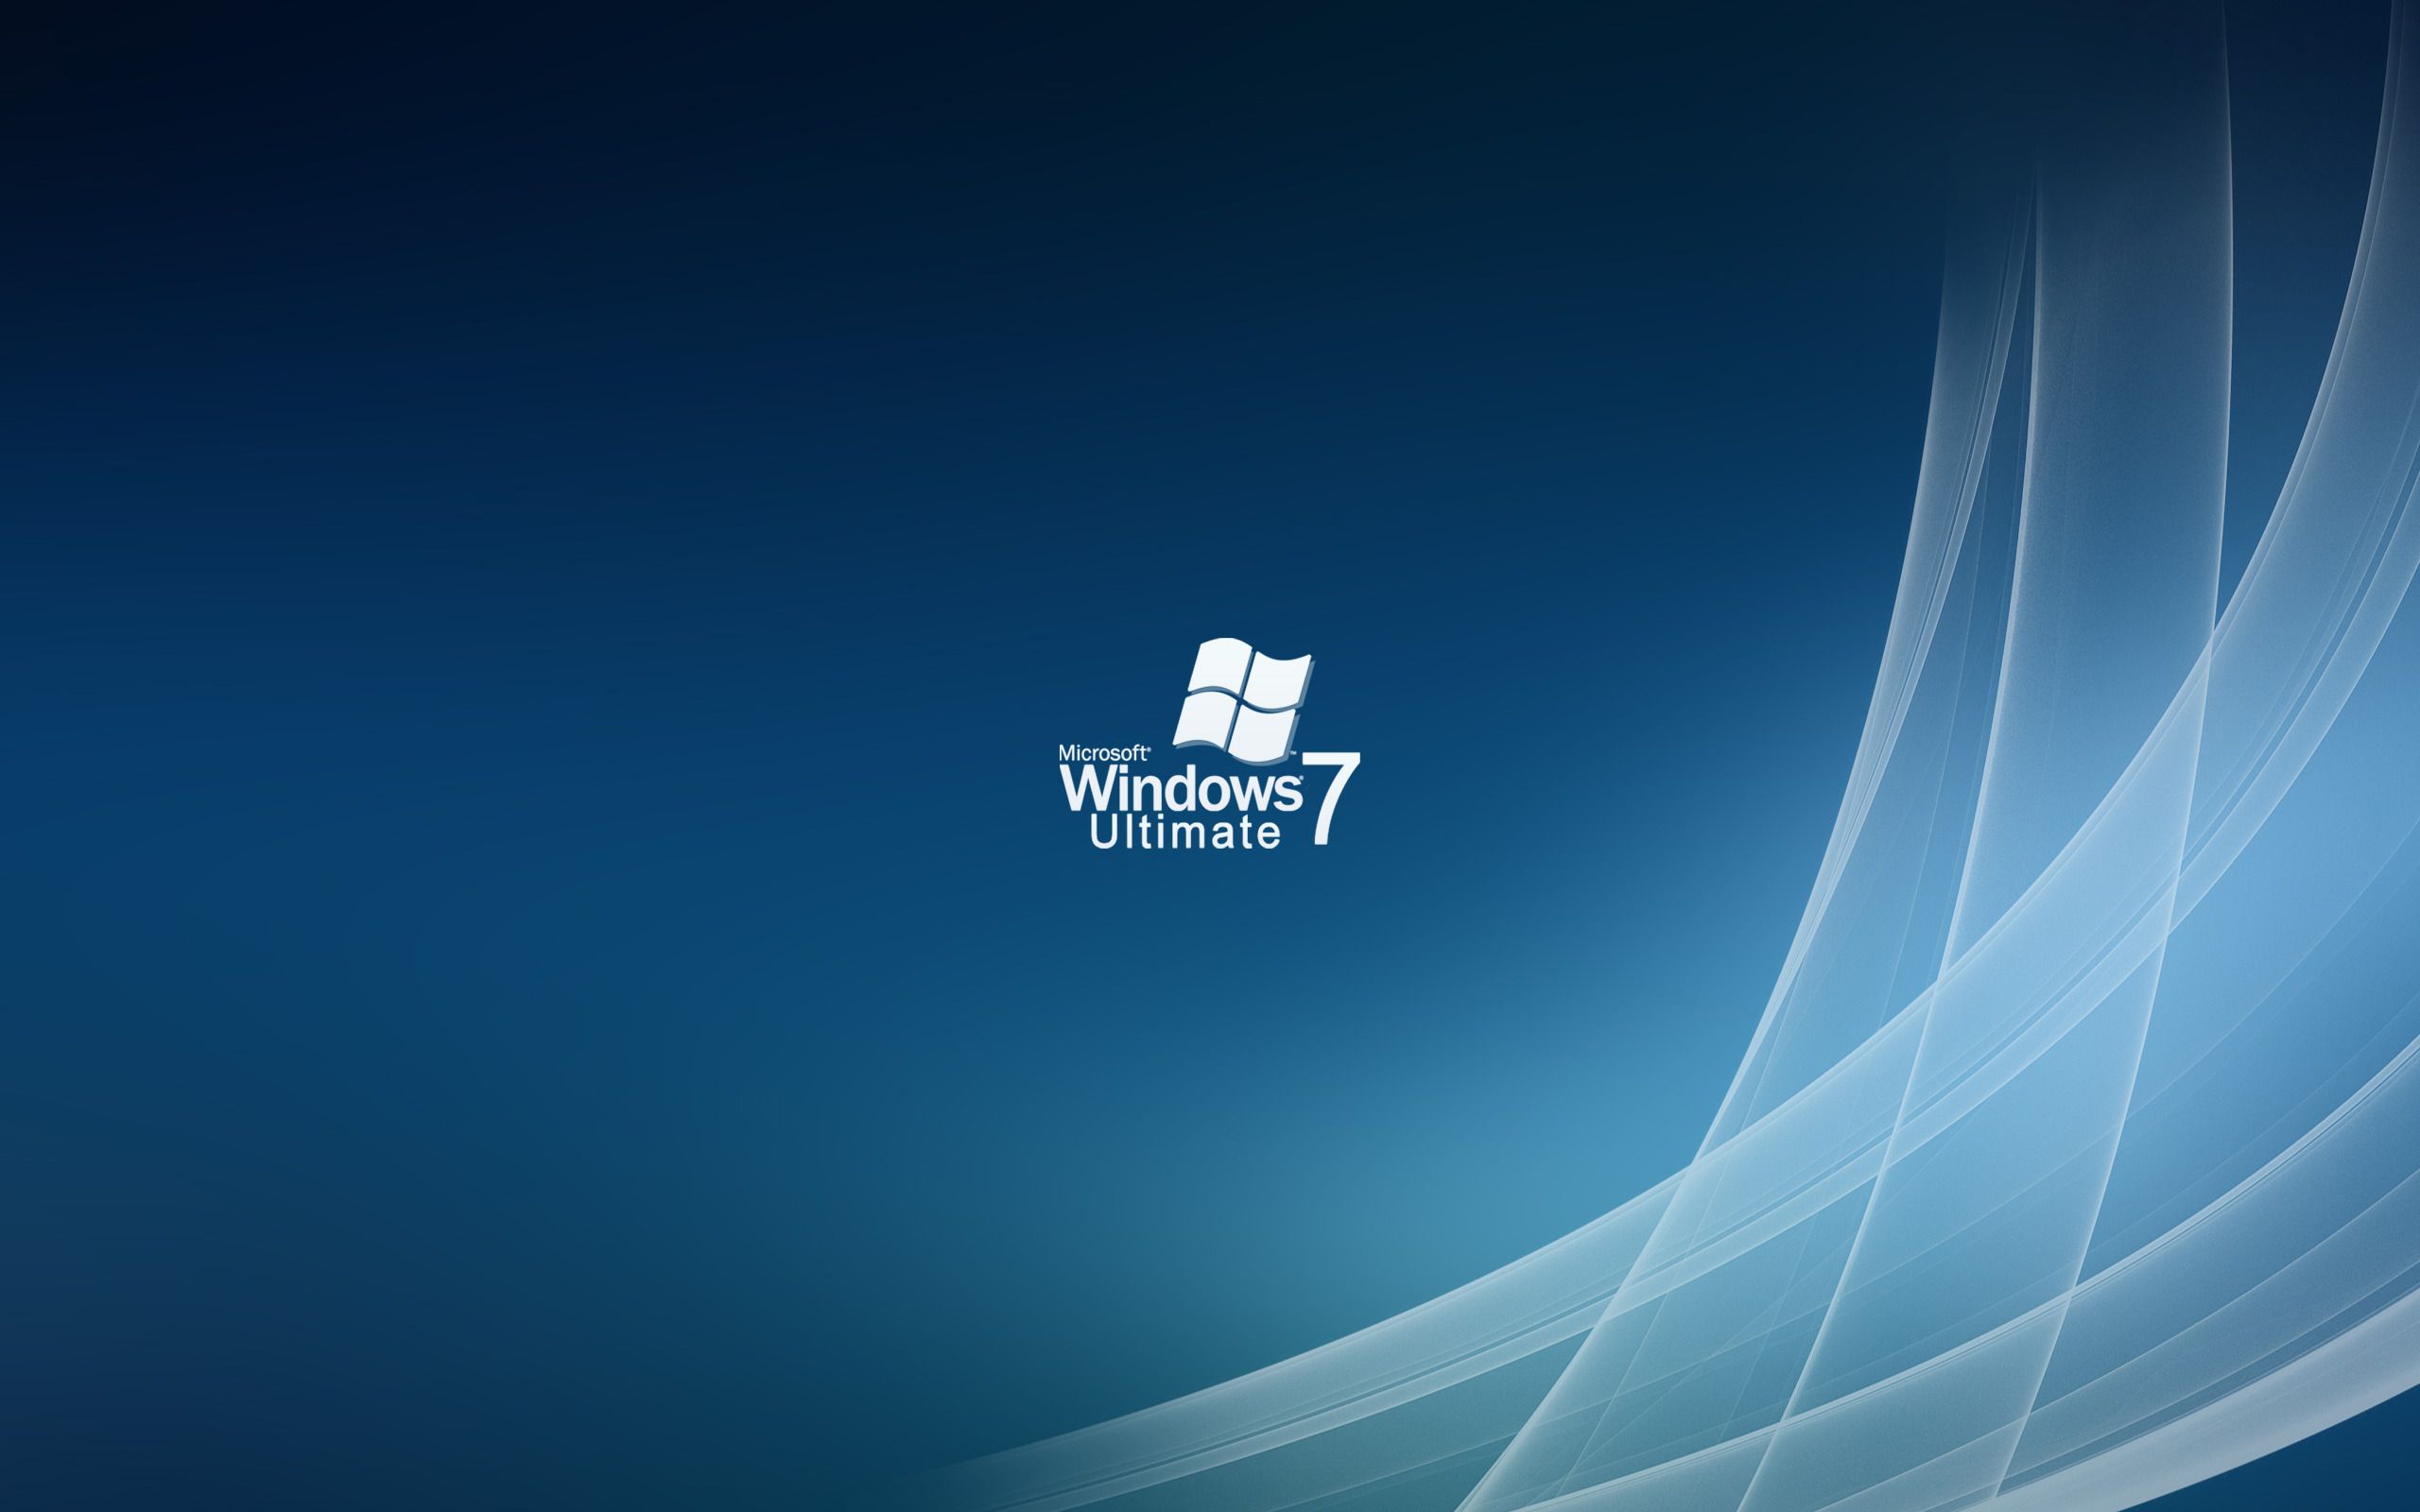 Fondos de pantalla de Windows 7 - Los mejores fondos de Windows 7 gratis - WallpaperAccess